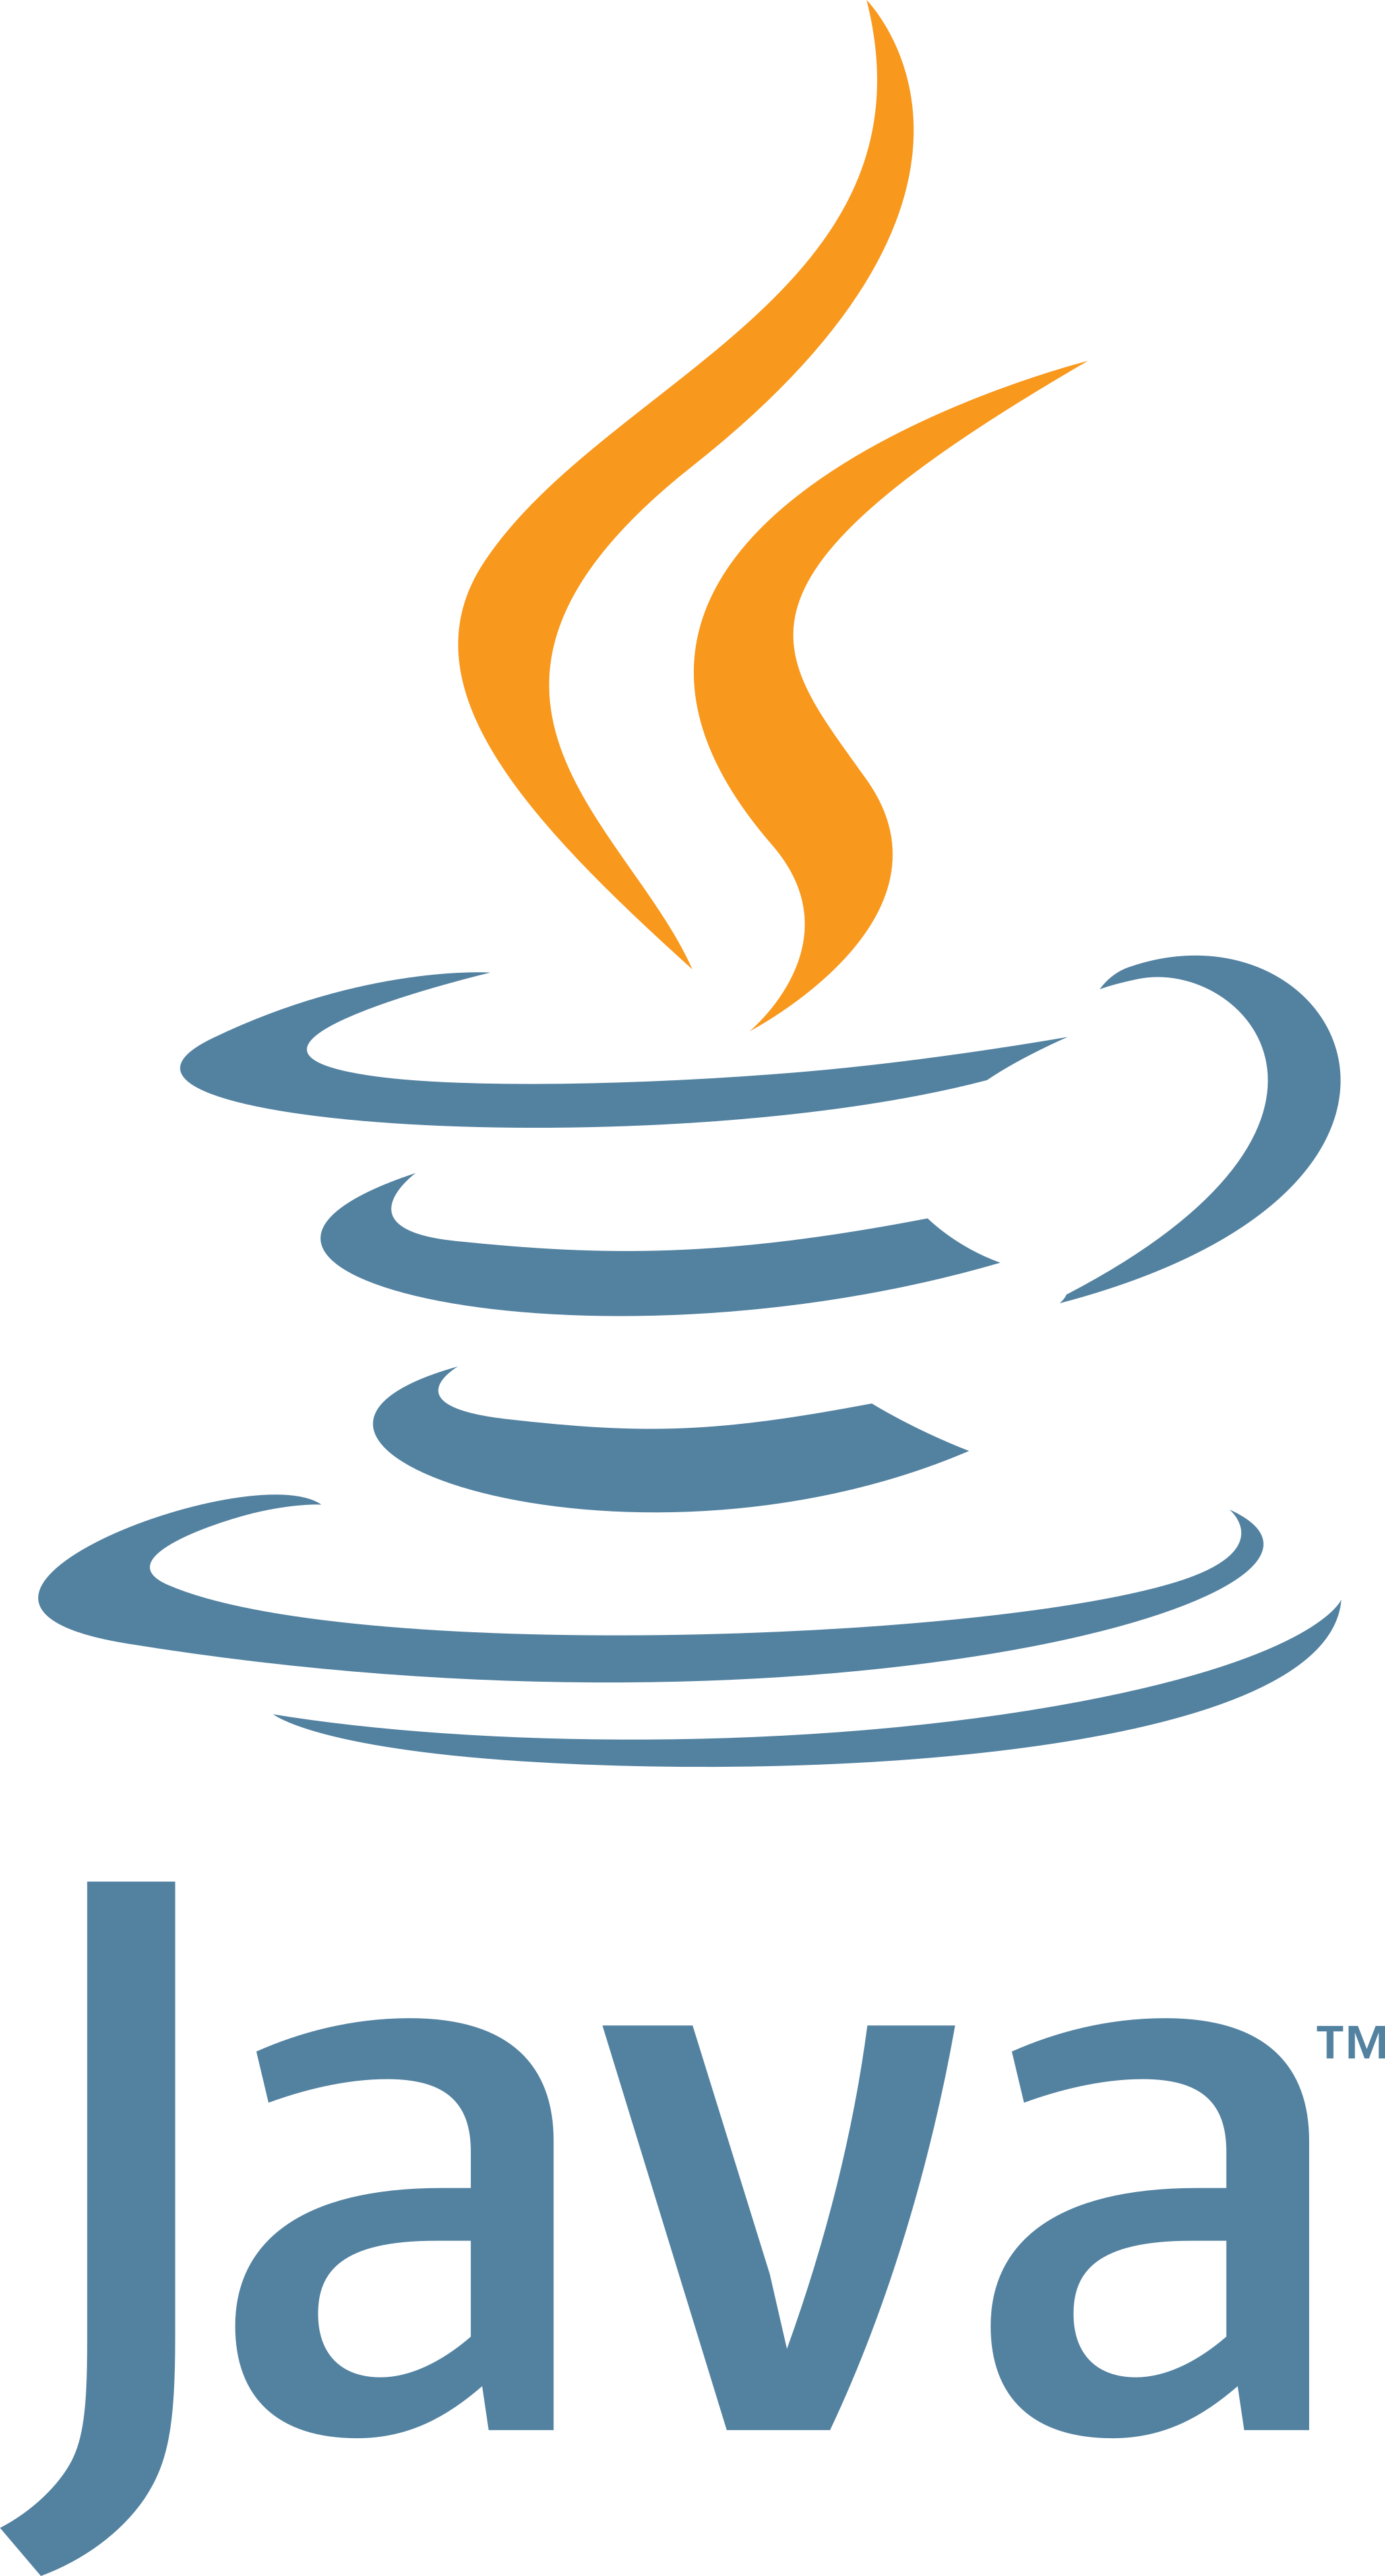 Java Logo.